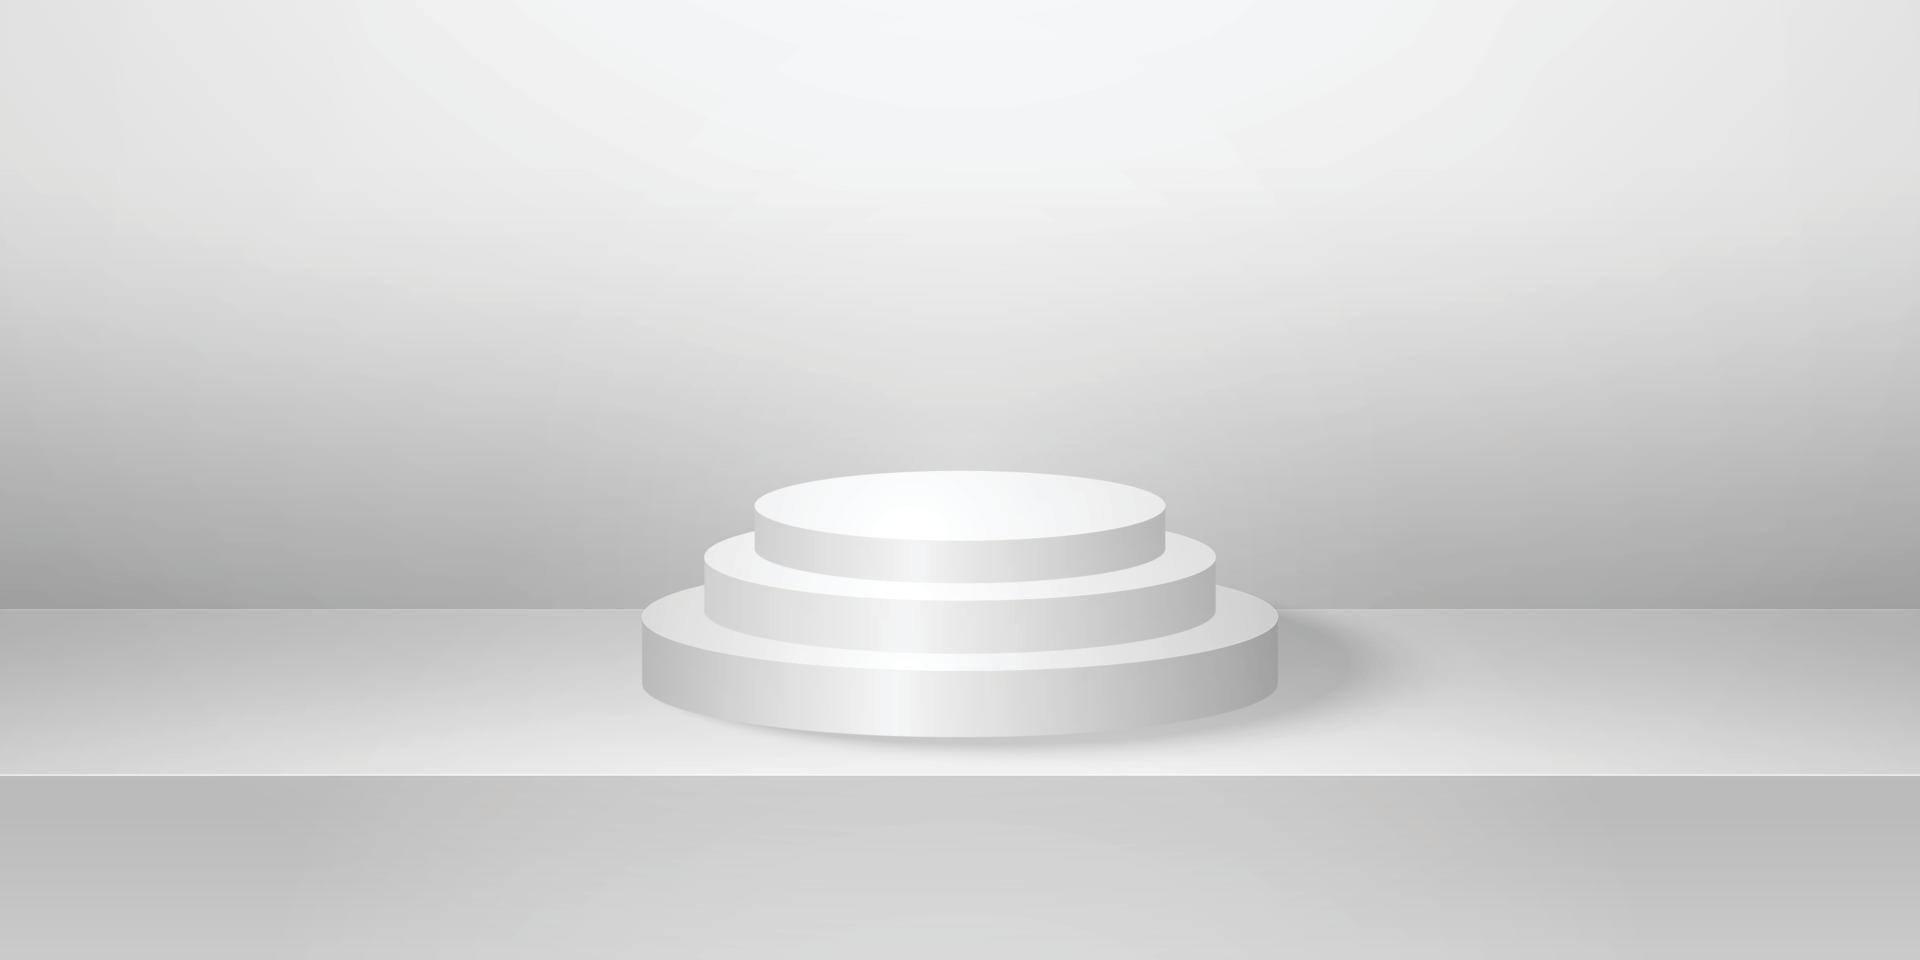 podium ou piédestal rond réaliste avec salle de studio vide grise, arrière-plan de produit minimal, maquette de modèle pour l'affichage, forme géométrique vecteur